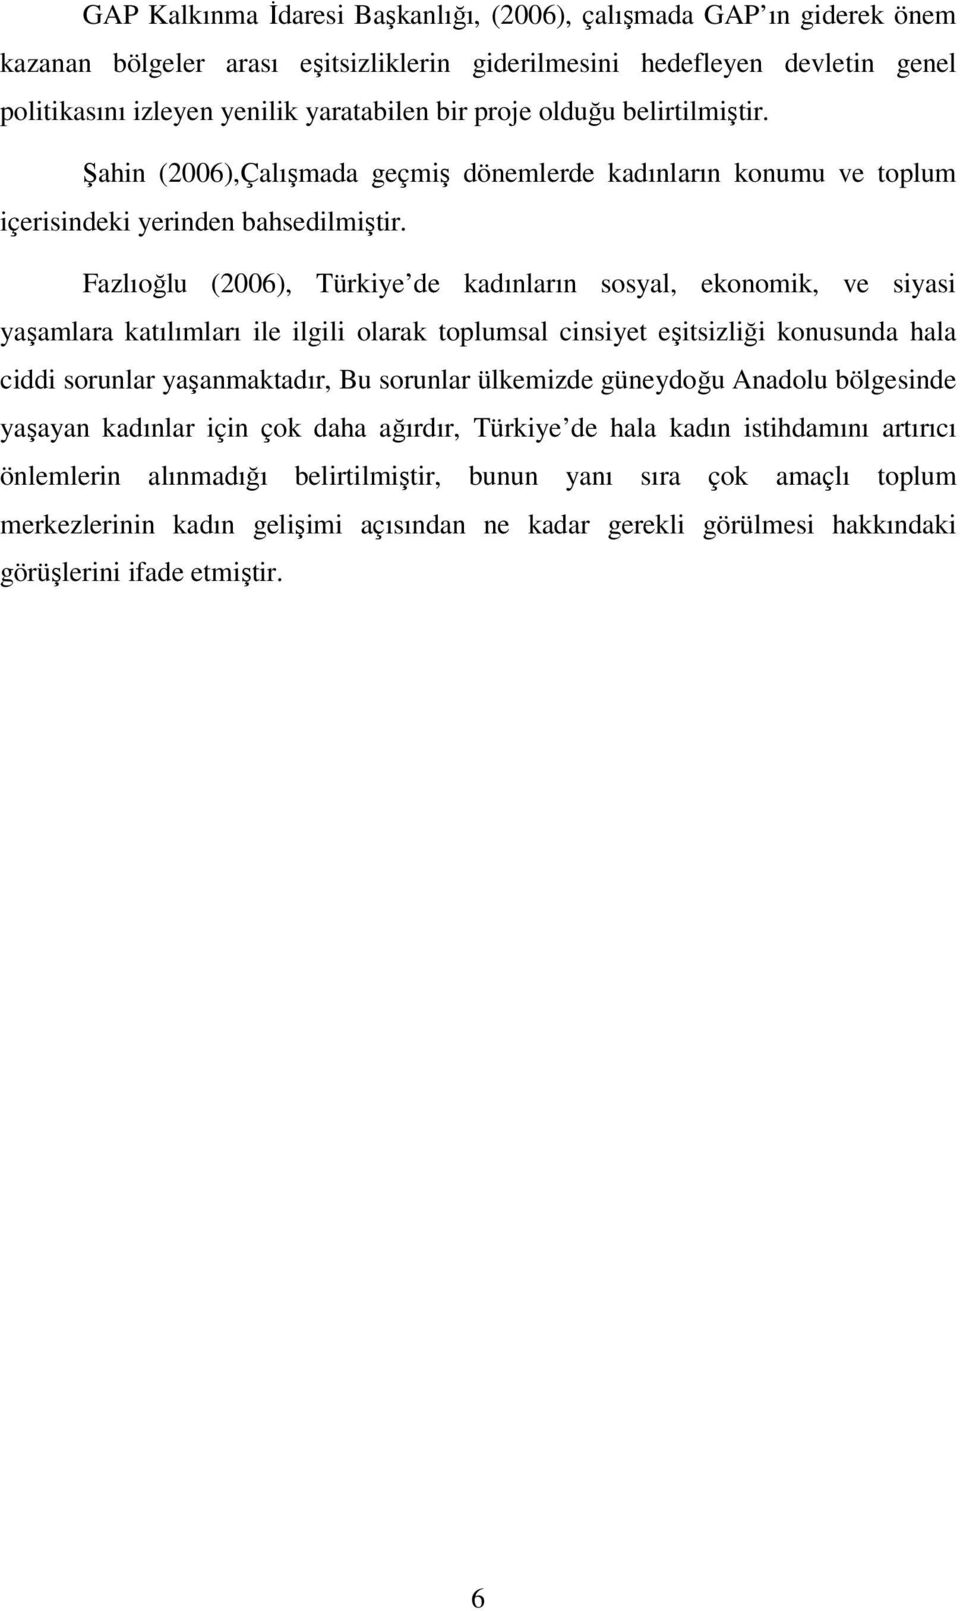 Fazlıoğlu (2006), Türkiye de kadınların sosyal, ekonomik, ve siyasi yaşamlara katılımları ile ilgili olarak toplumsal cinsiyet eşitsizliği konusunda hala ciddi sorunlar yaşanmaktadır, Bu sorunlar